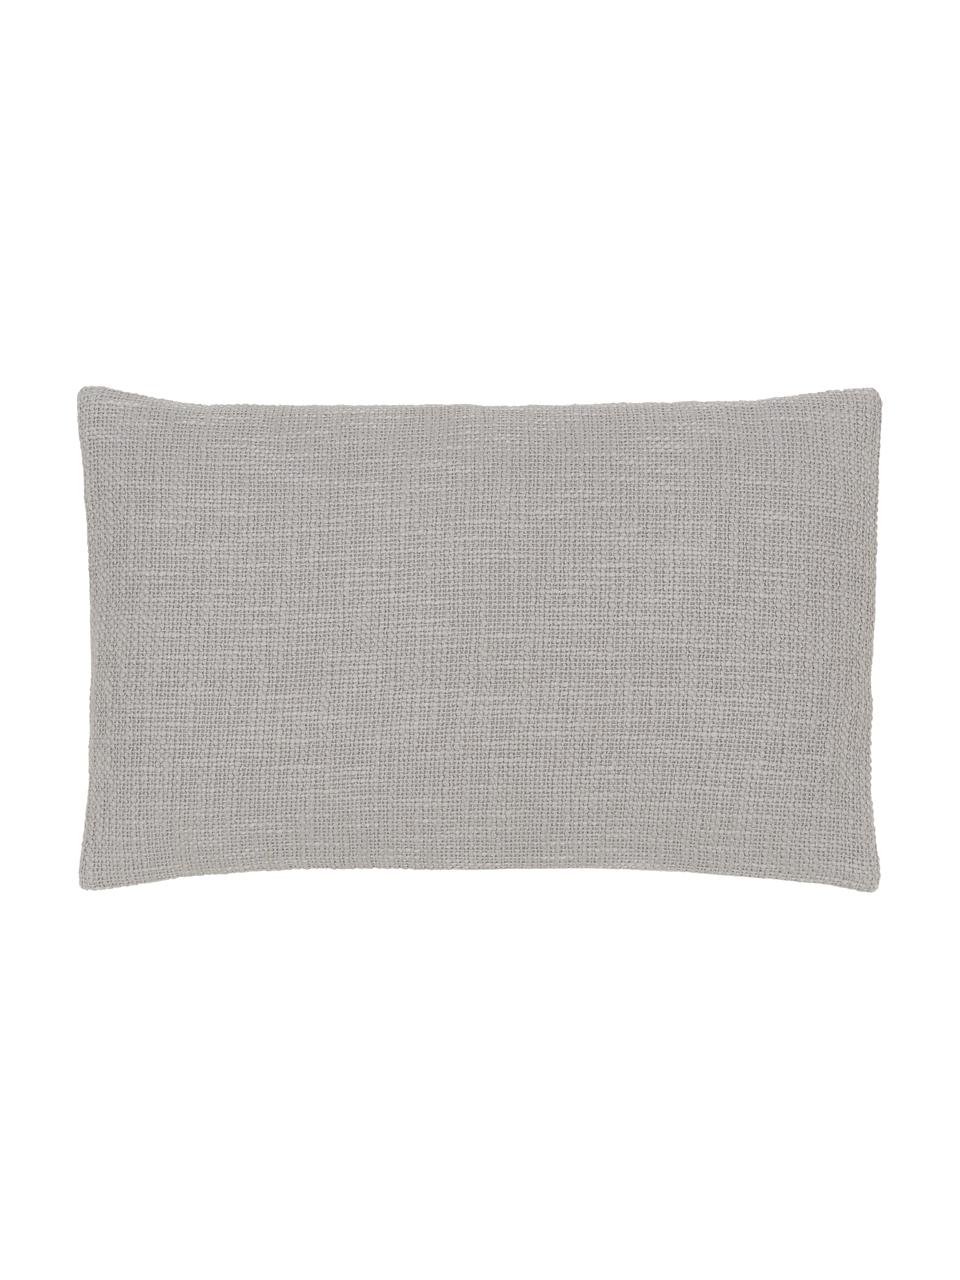 Poszewka na poduszkę Anise, 100% bawełna, Szary, S 30 x D 50 cm